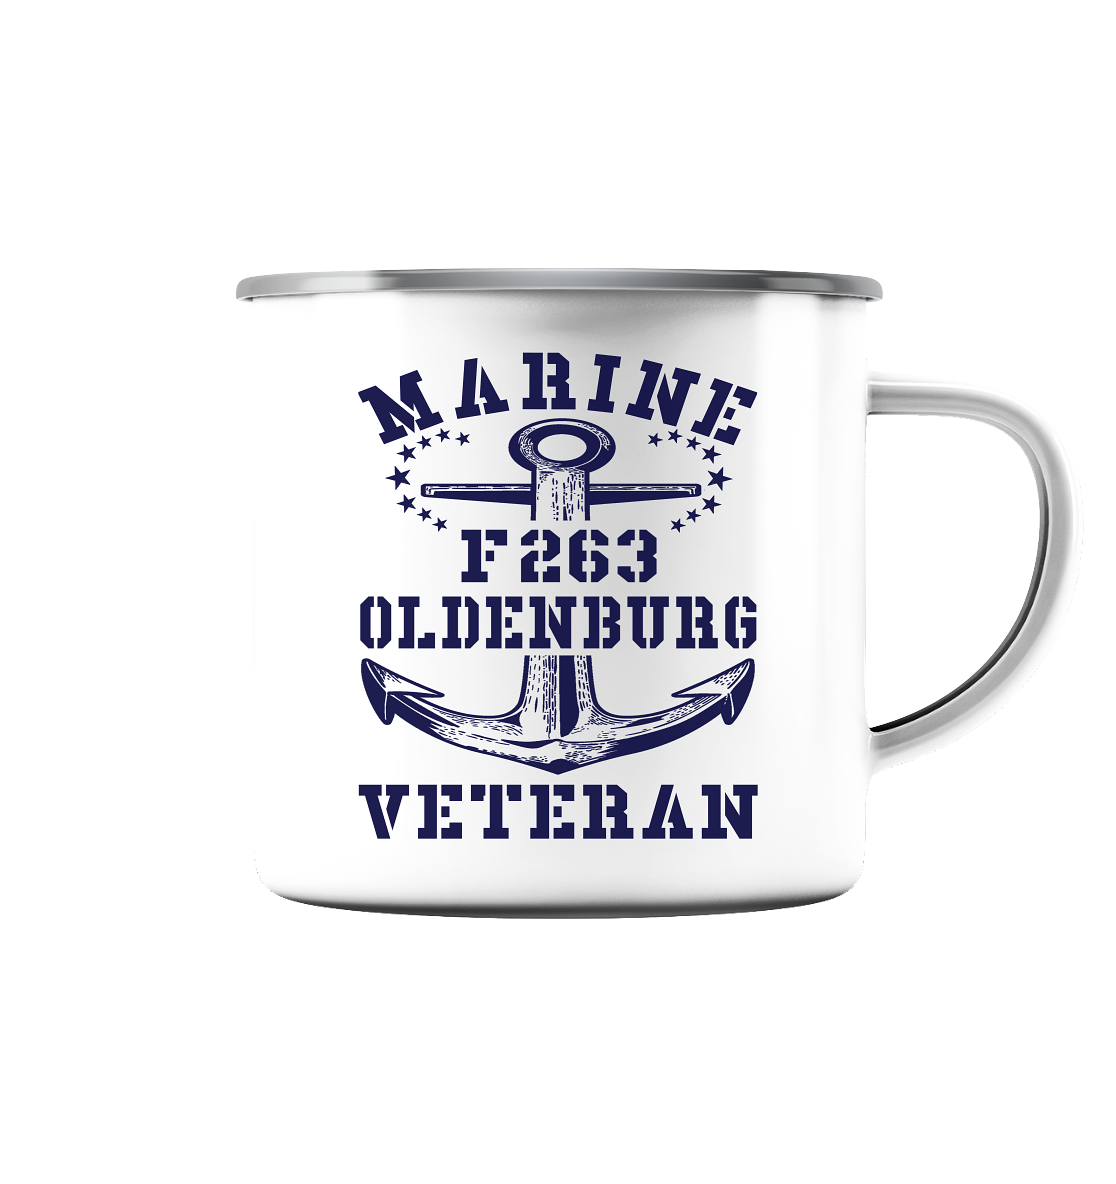 Korvette F263 OLDENBURG Marine Veteran  - Emaille Tasse (Silber)